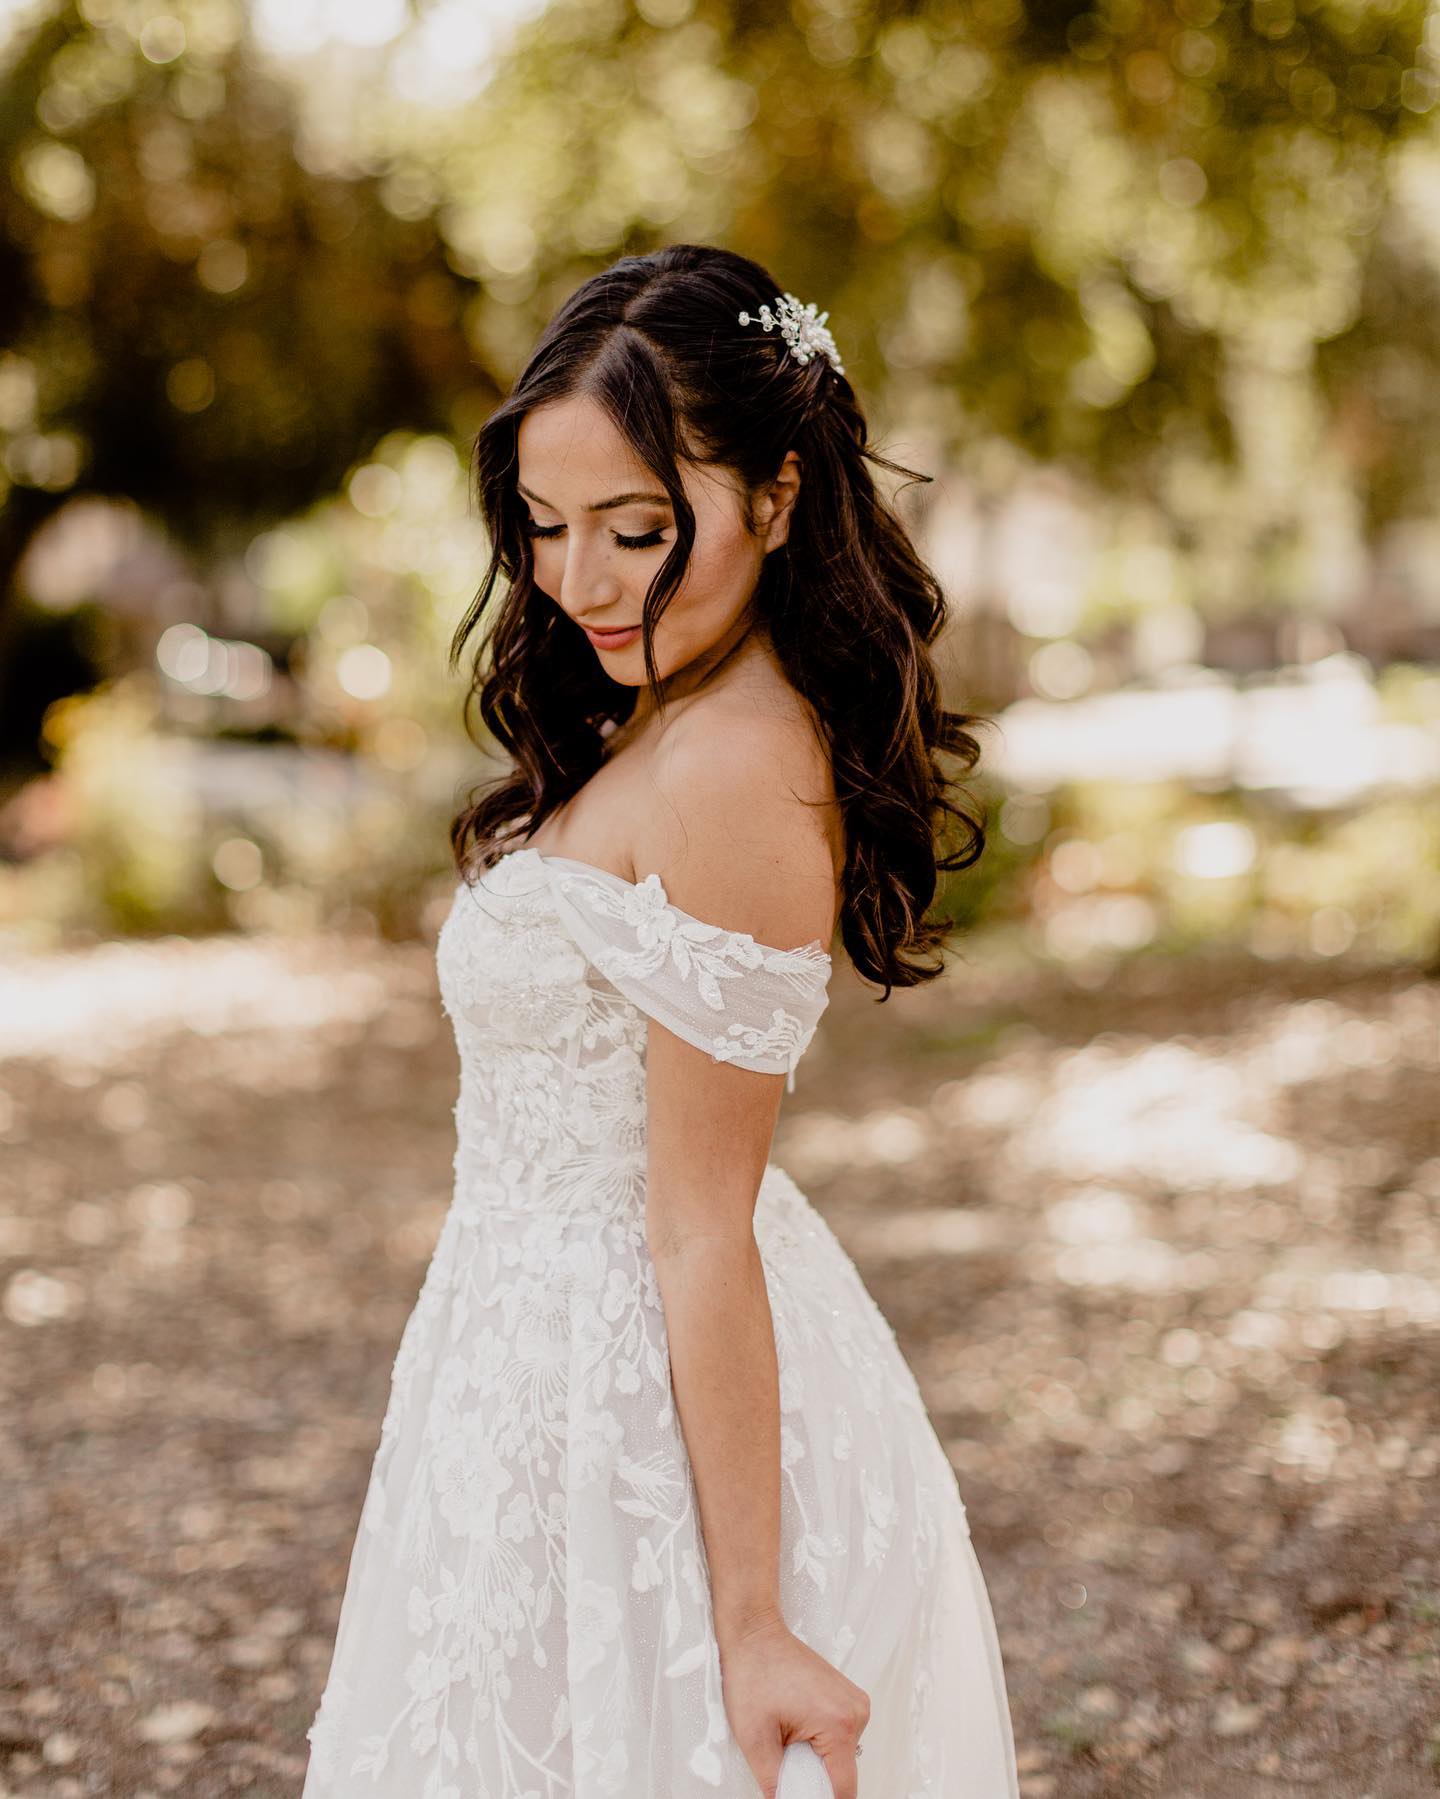 How To Customize Your Wedding Dress Davids Bridal Blog